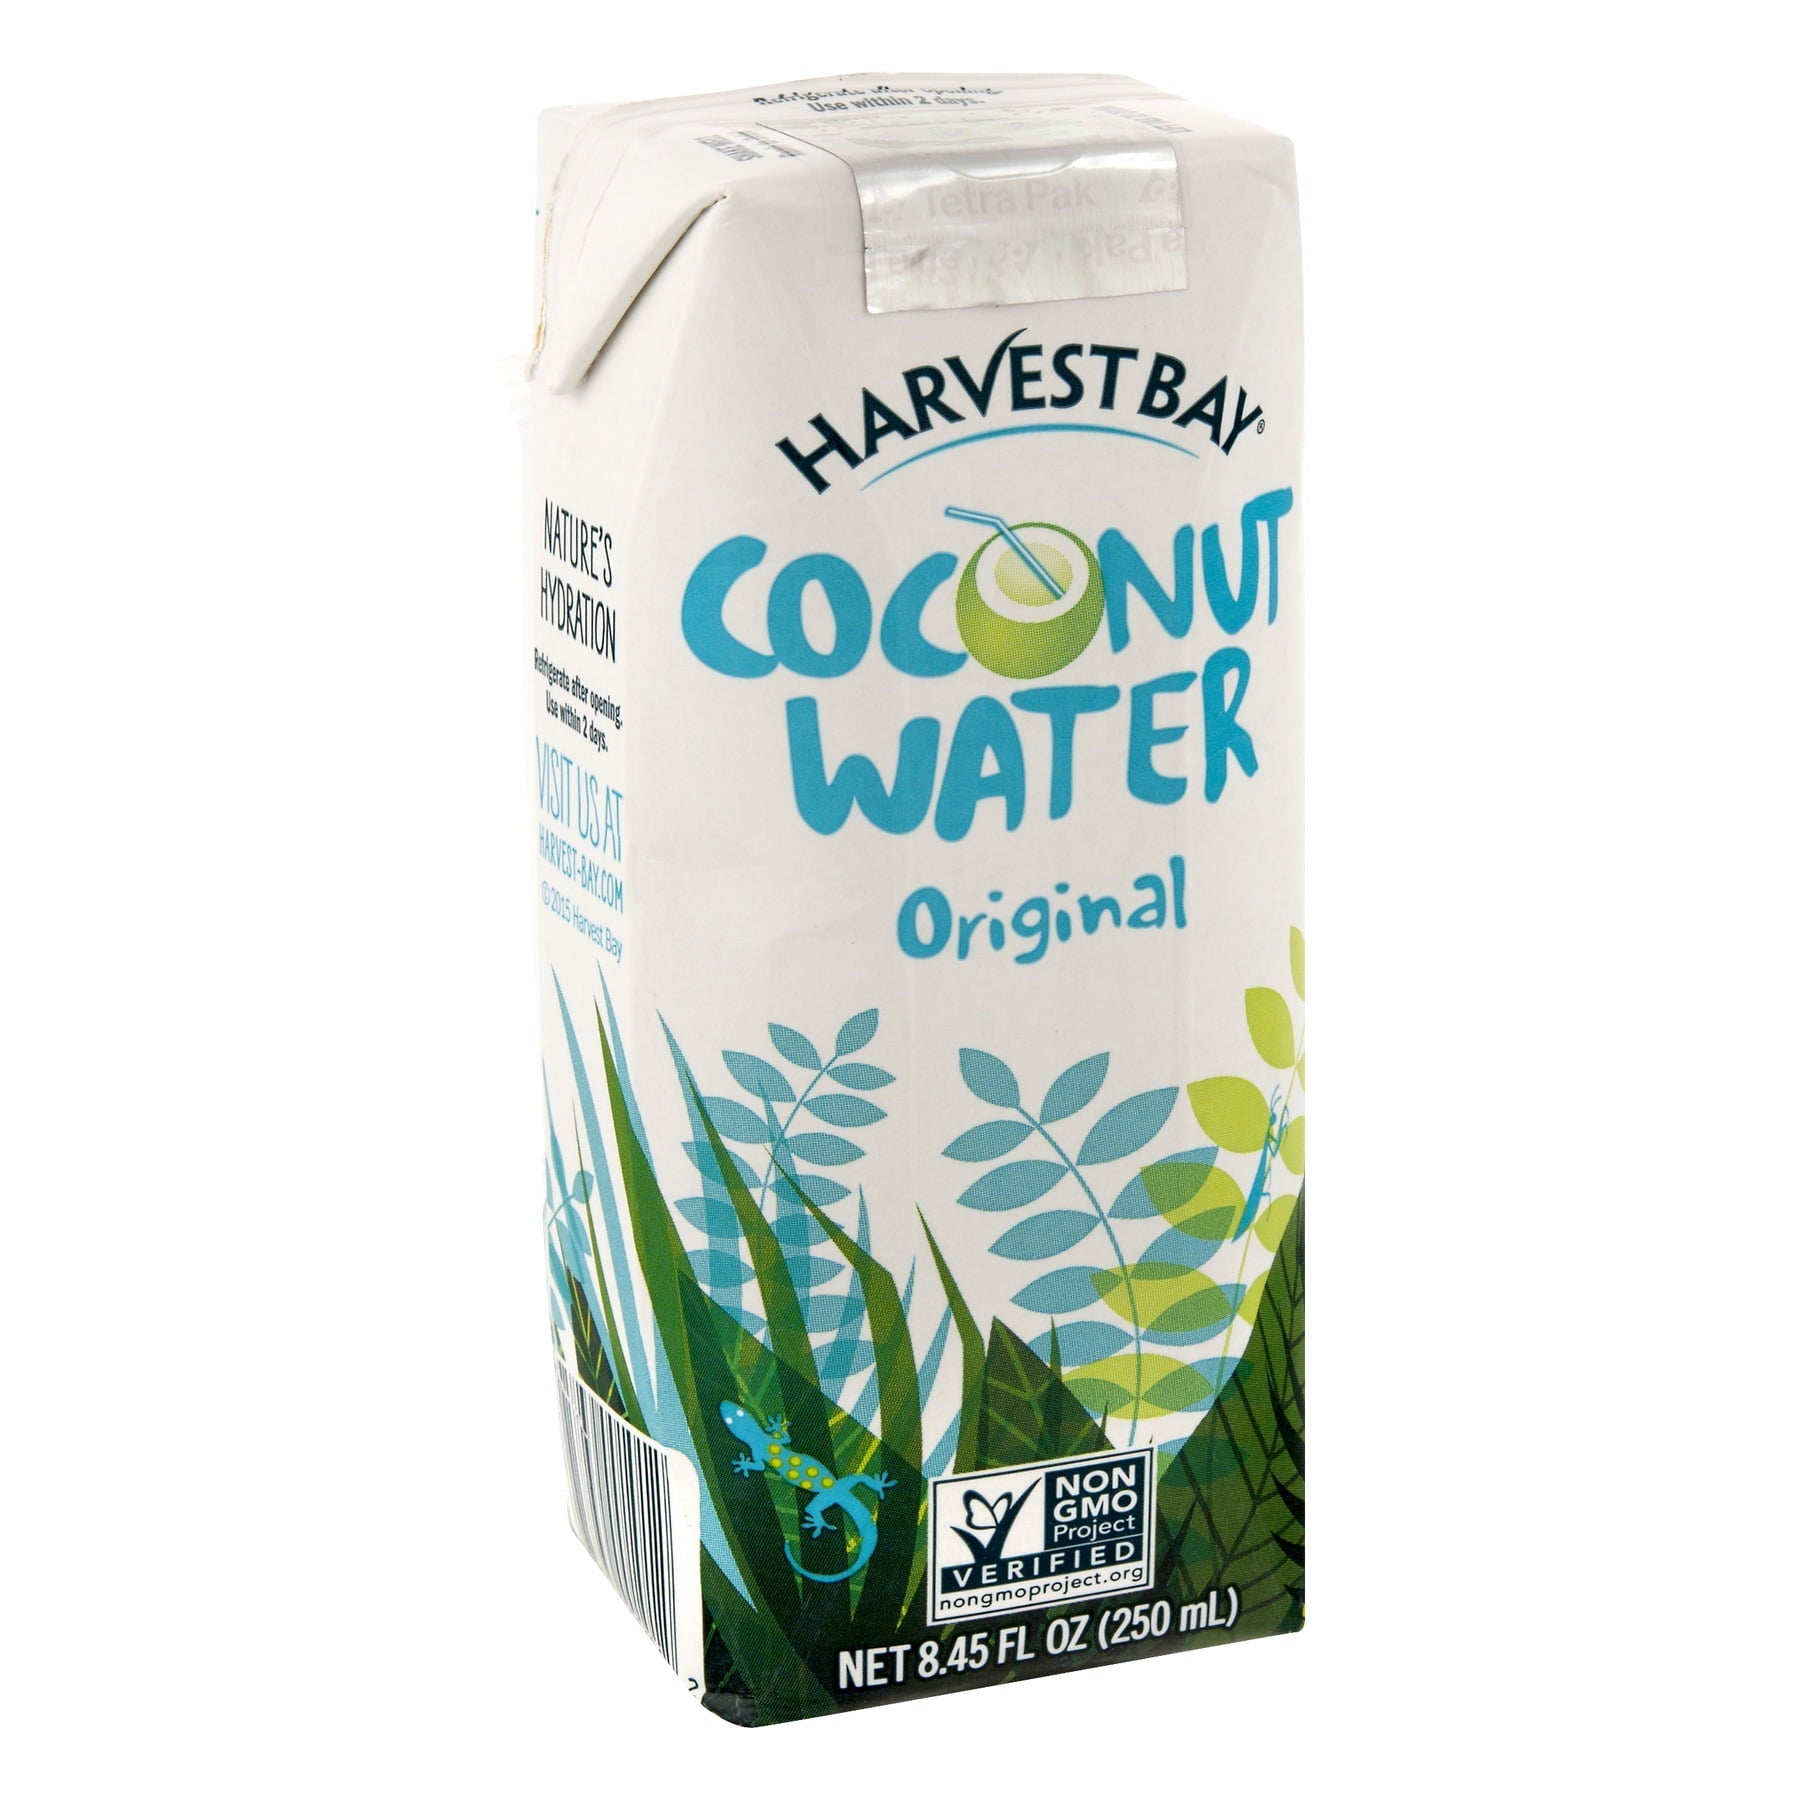 Harvest Bay Coconut Water 8.45 Fl Oz Box